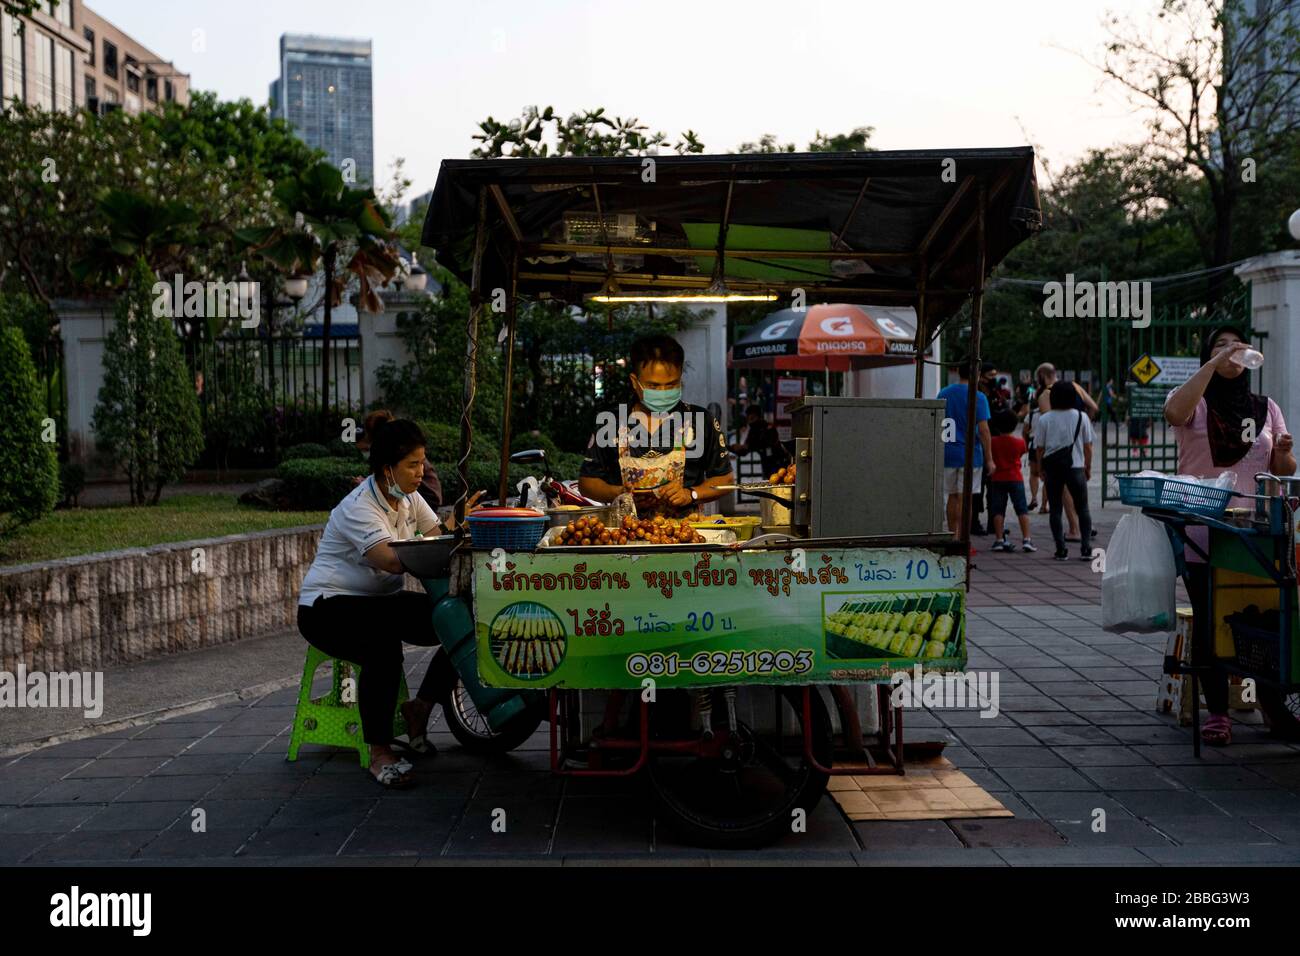 Bangkok, Bangkok, Thailand. März 2020. Ein Straßenhändler verkauft traditionelle Thai-Wurst vor dem Park Benjamin-asiri. Die Bürger Bangkoks leben seit dem 26. März unter einer teilweisen Sperrung der Stadt, da die tägliche Anzahl der bestätigten Covid-19-Fälle stetig zugenommen hat. Soziale Distanzierung und Selbstisolation wurden von den Behörden gefördert, obwohl es aufgrund der täglichen Verpflichtungen, die viele Menschen haben, oft schwierig ist, diese beizubehalten. Credit: Adryel Talamantes/ZUMA Wire/Alamy Live News Stockfoto